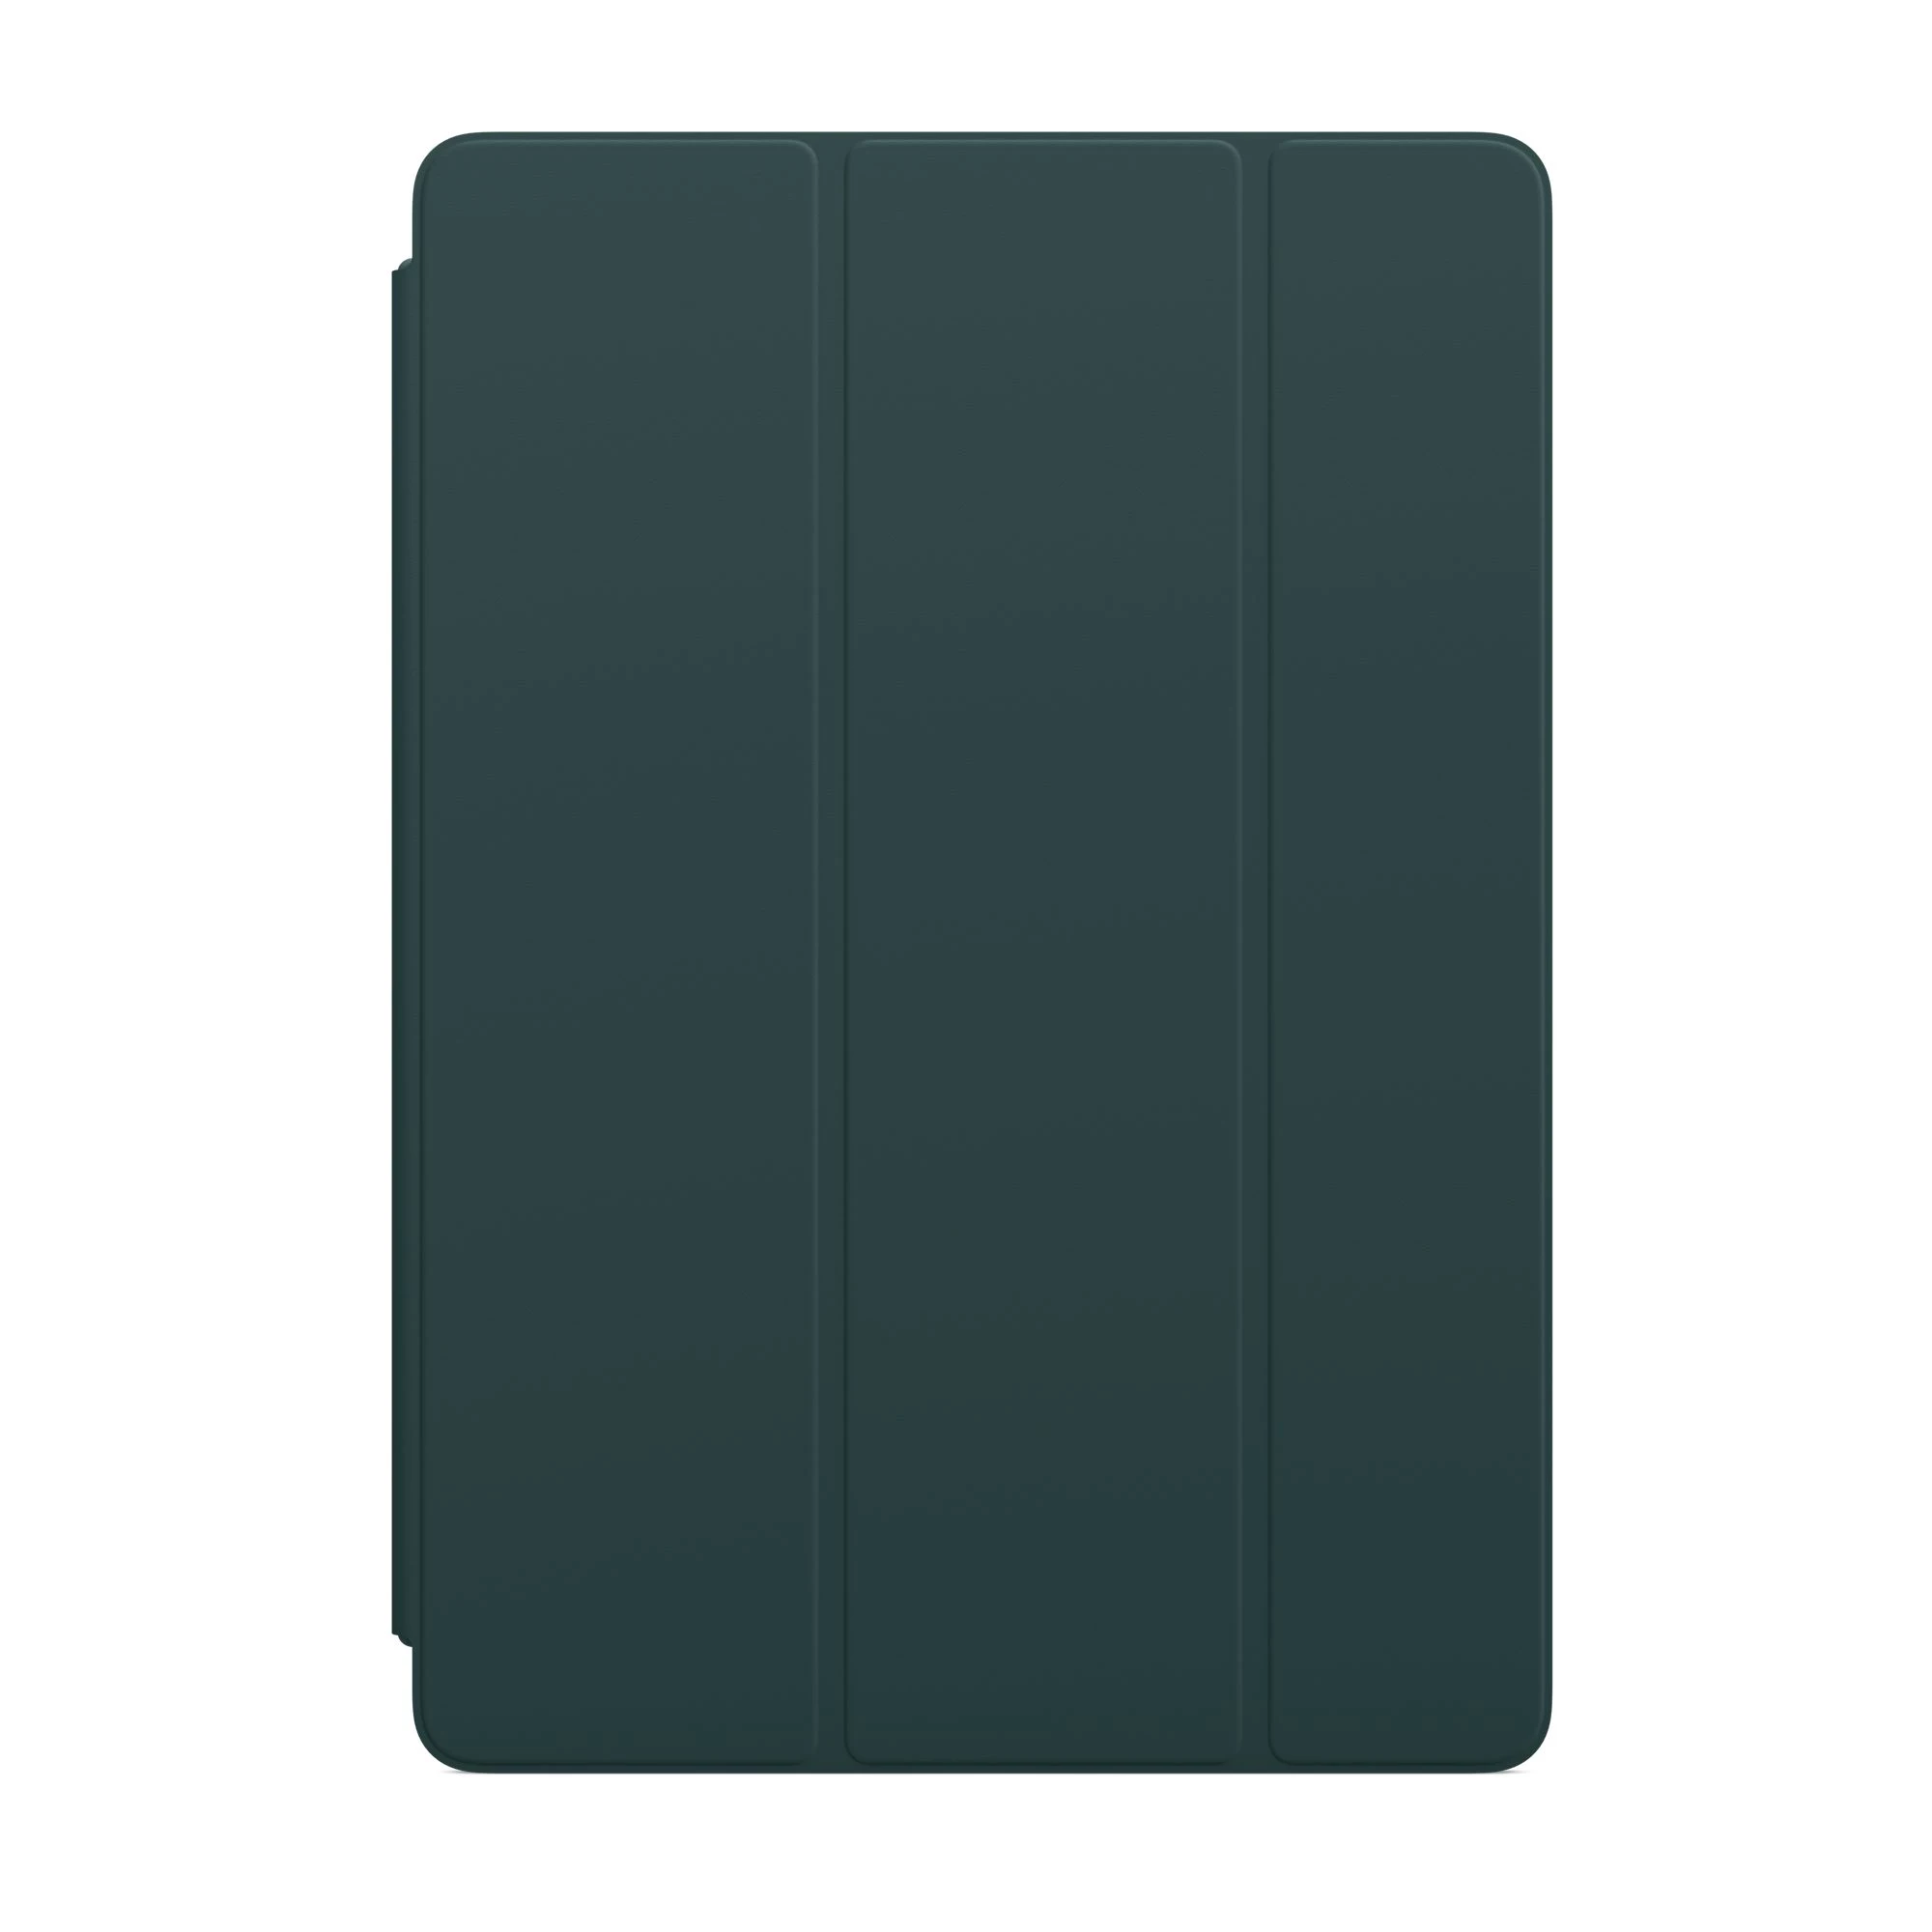 Apple Smart Cover for iPad 10.2" / Air 3 / Pro 10.5" - Mallard Green (MJM73)